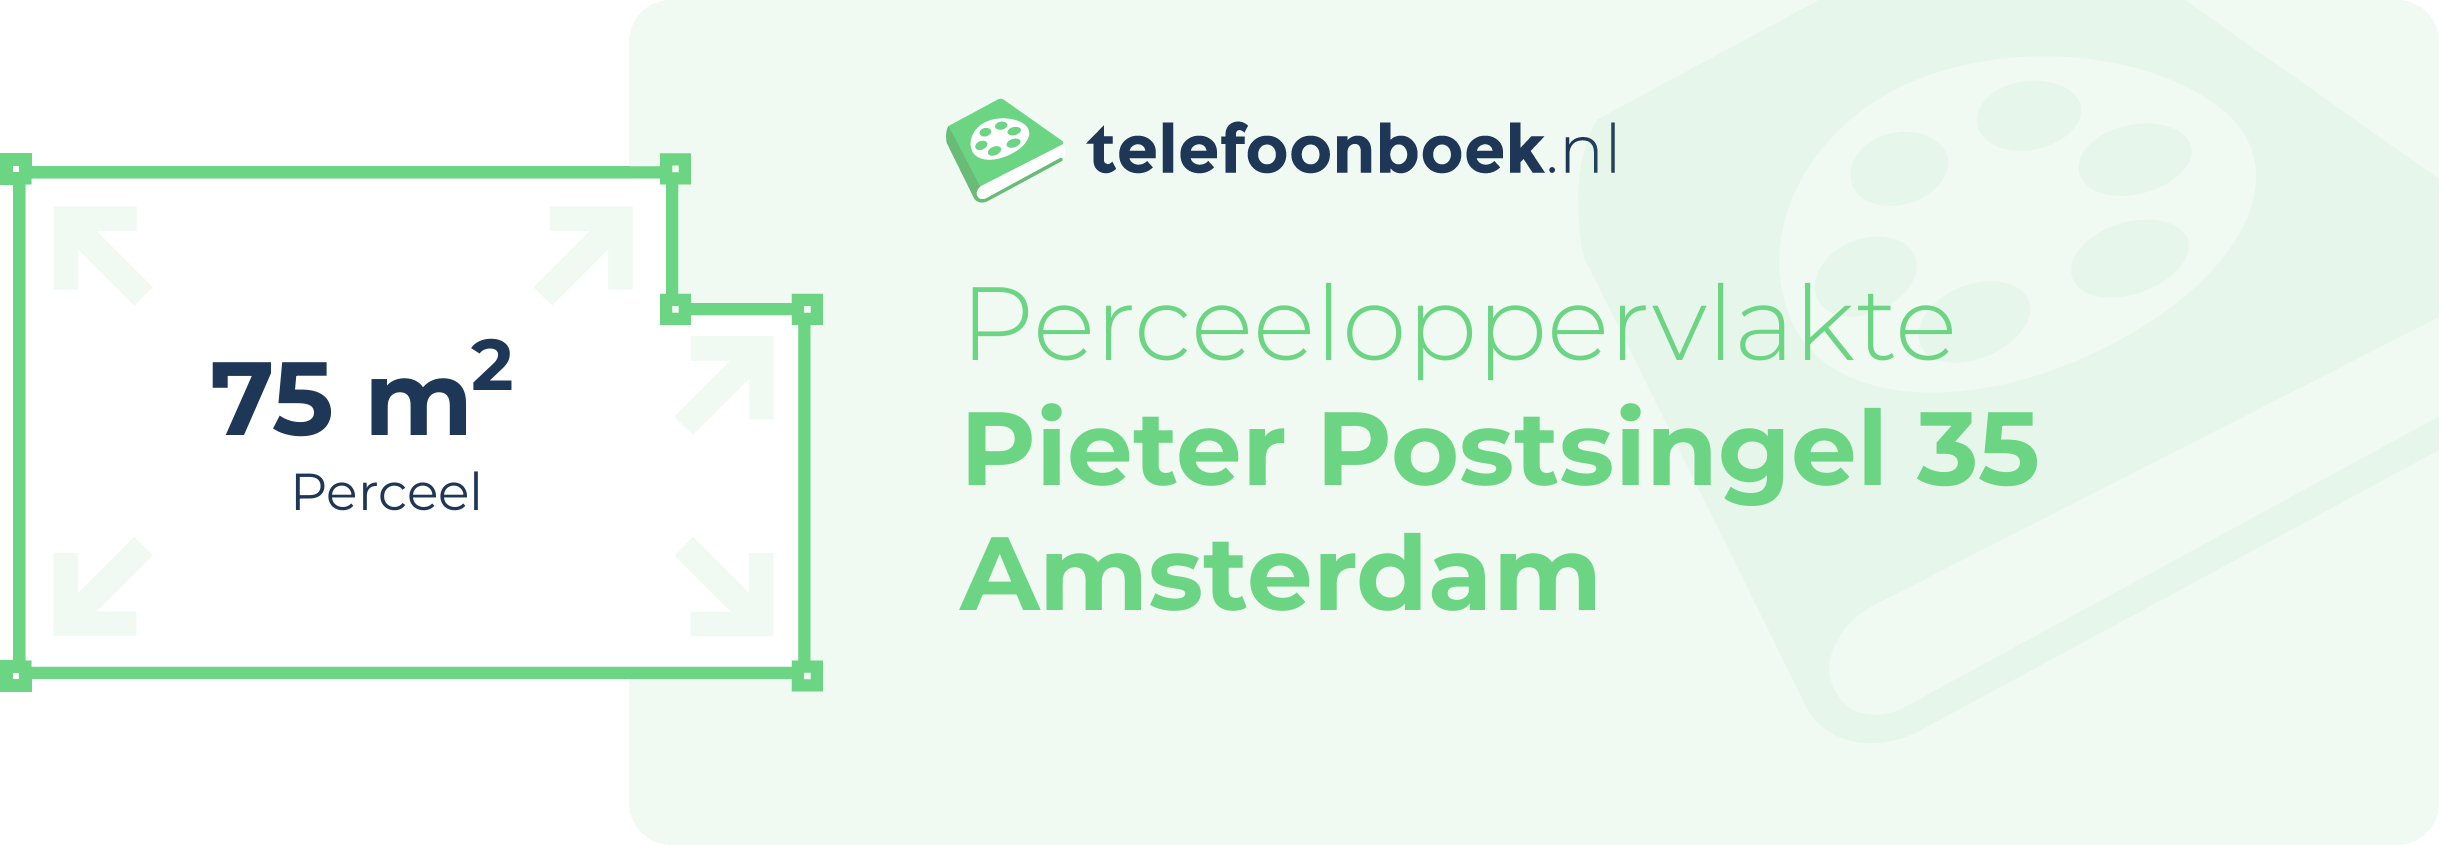 Perceeloppervlakte Pieter Postsingel 35 Amsterdam